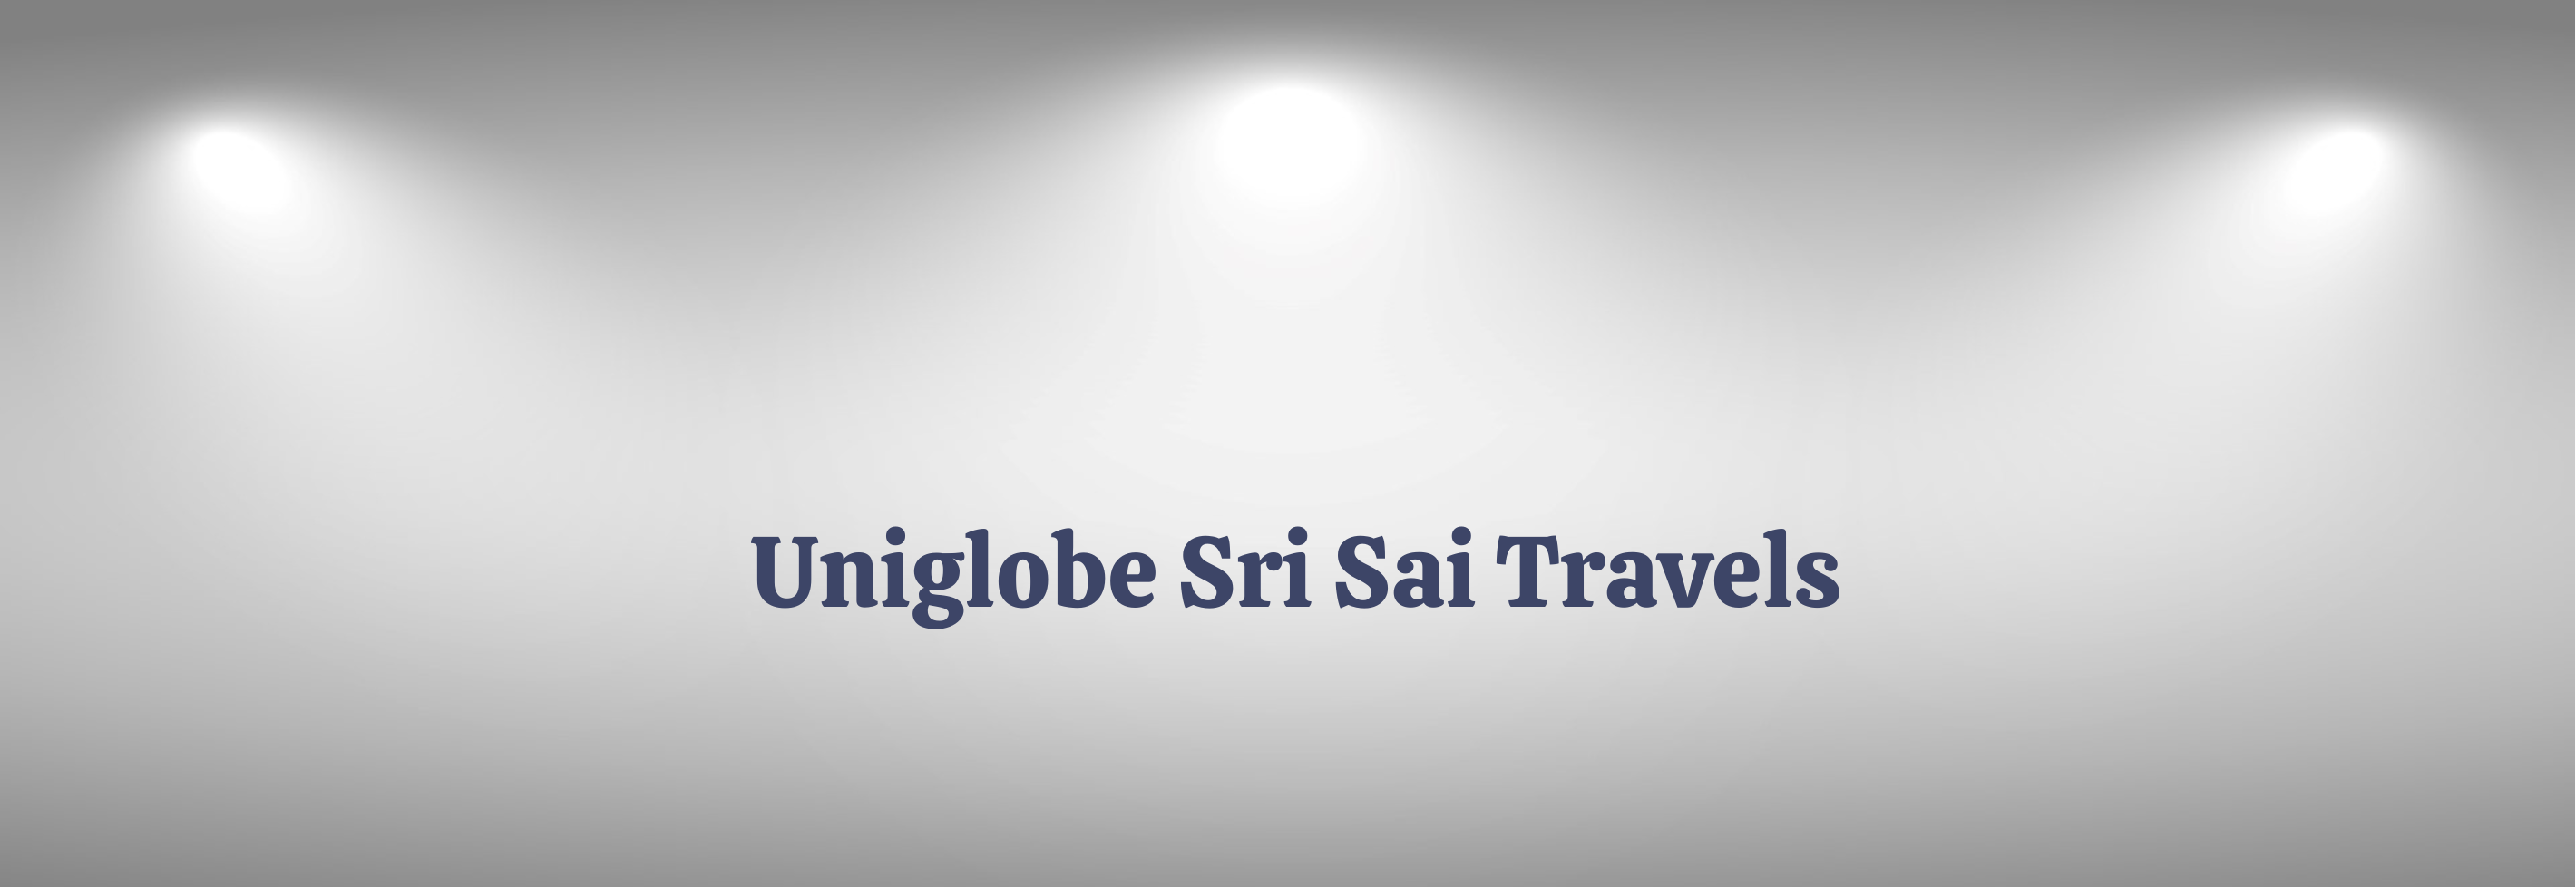 Uniglobe Sri Sai Travels